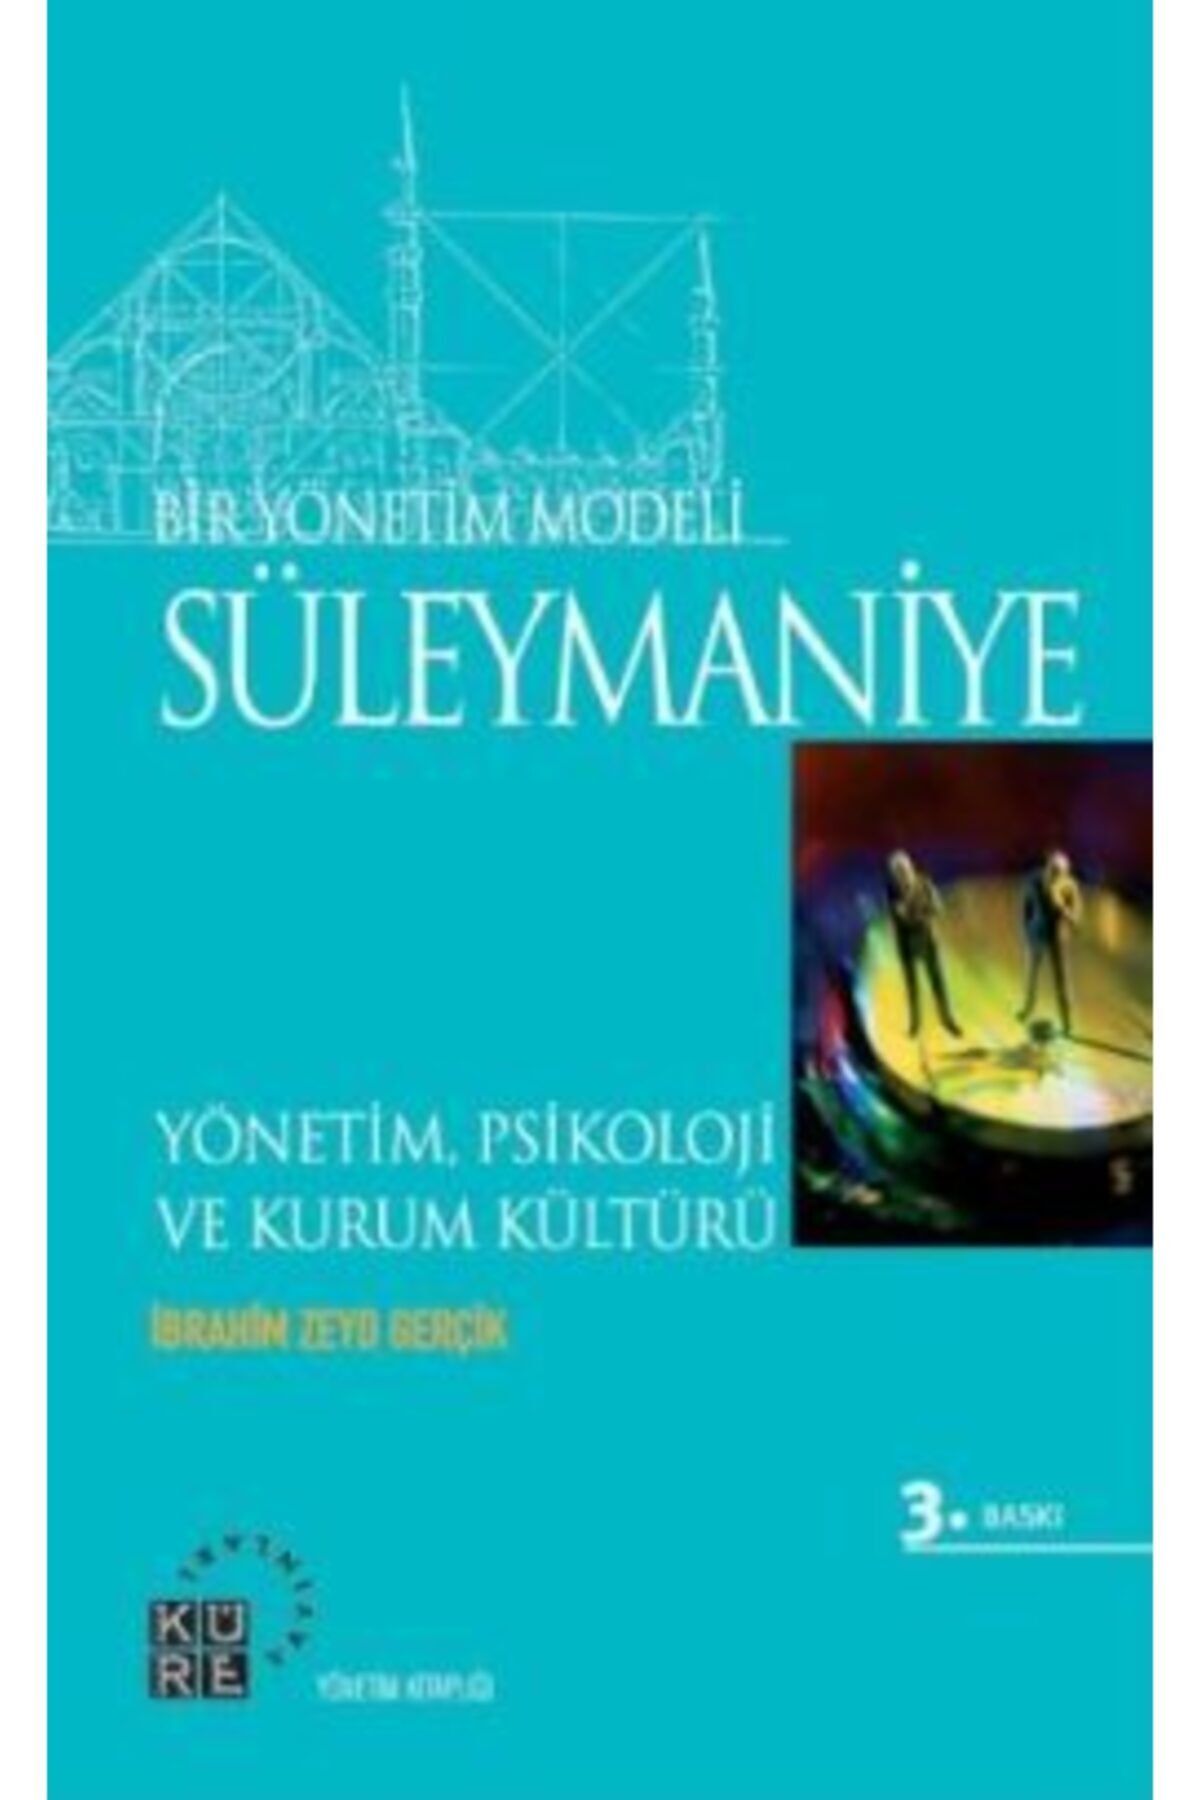 Küre Yayınları Bir Yönetim Modeli - Süleymaniye & Yönetim, Psikoloji Ve Kurum Kültürü